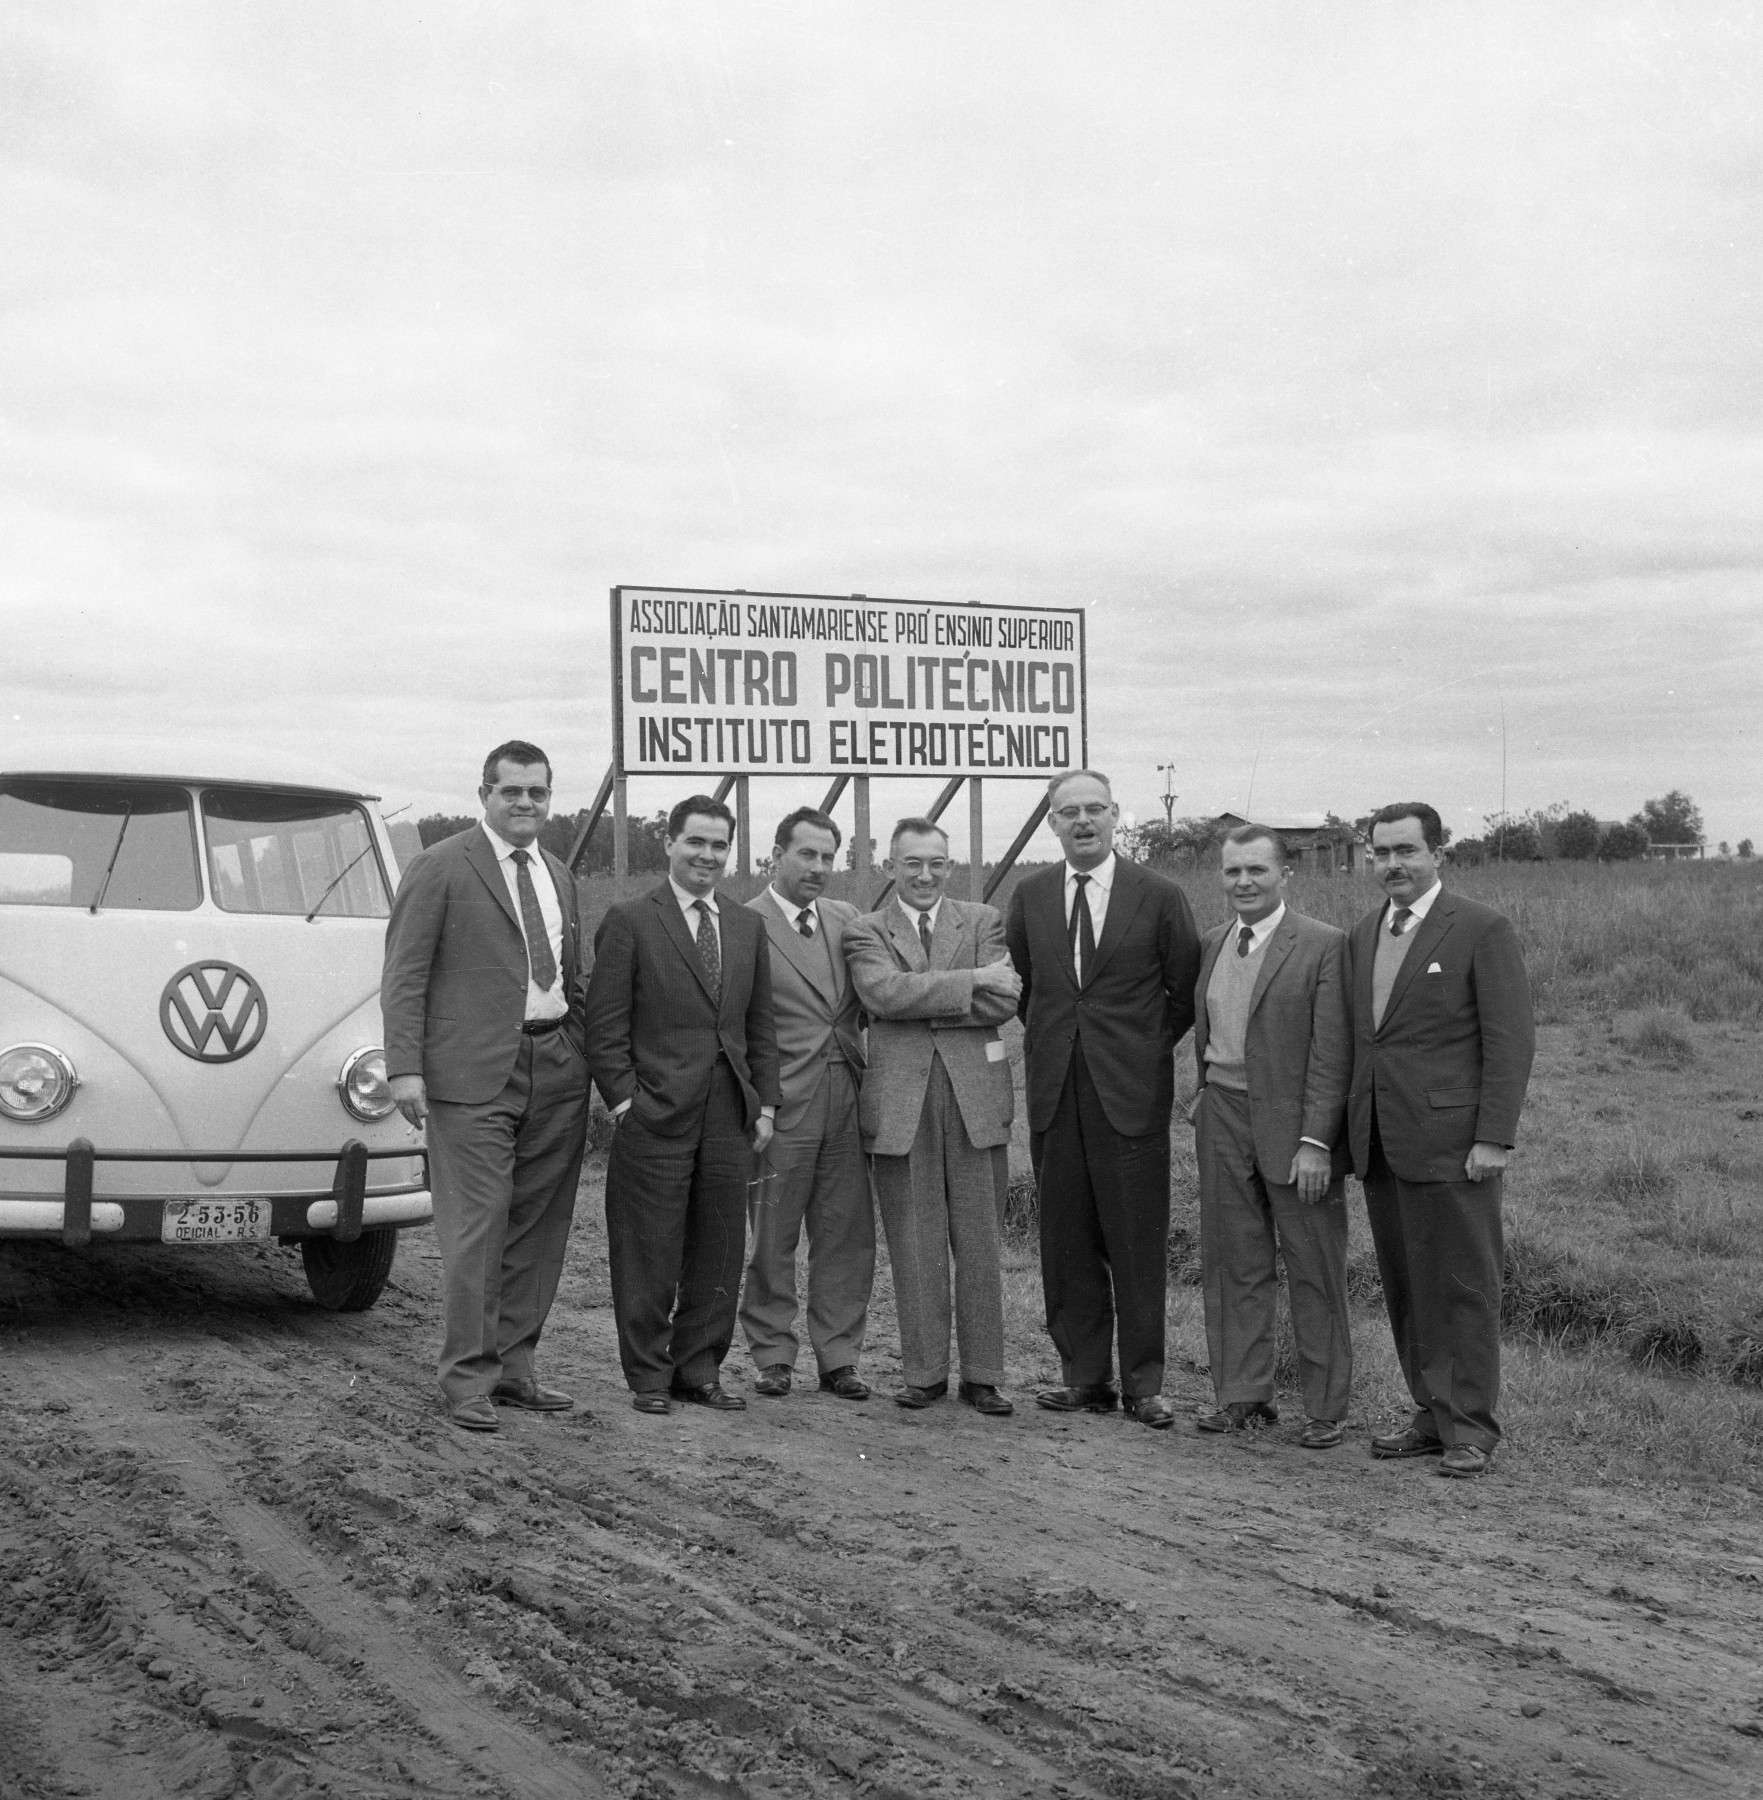 Fotografia quadrada preto e branca de 7 homens em uma estrada de chão em frente de uma Kombi e de uma placa escrita "Associação Santamariense Pró-Ensino Superior - Centro Politécnico - Instituto Eletrotécnico".